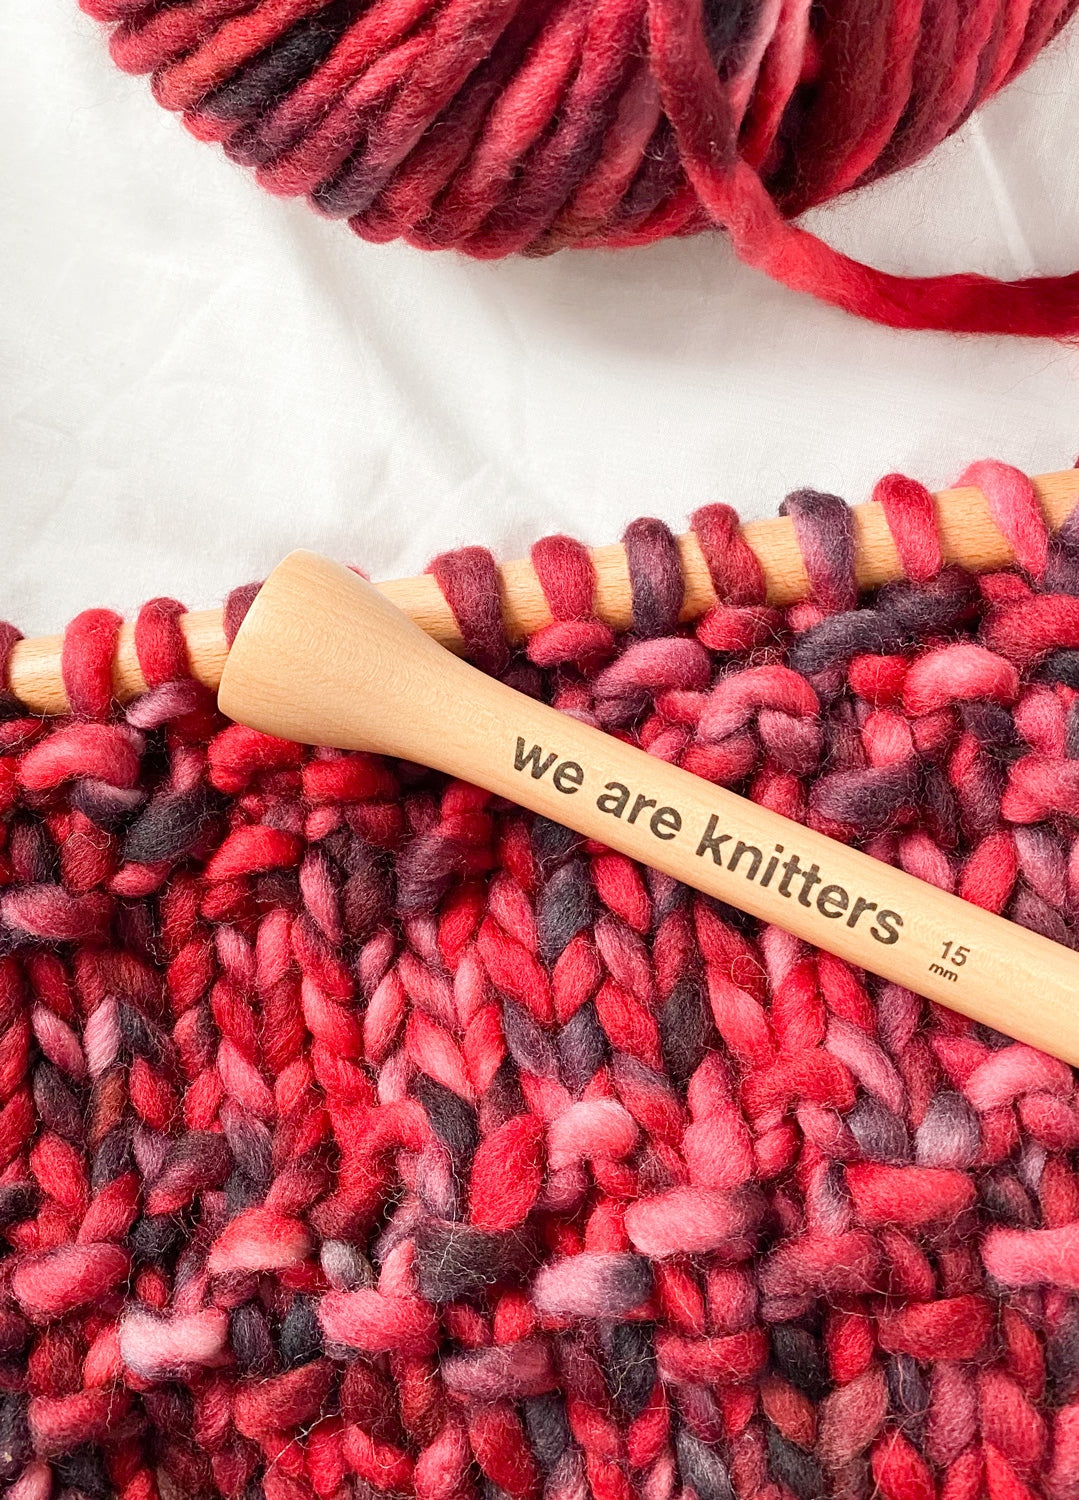 15mm Crochet Hook – weareknitters